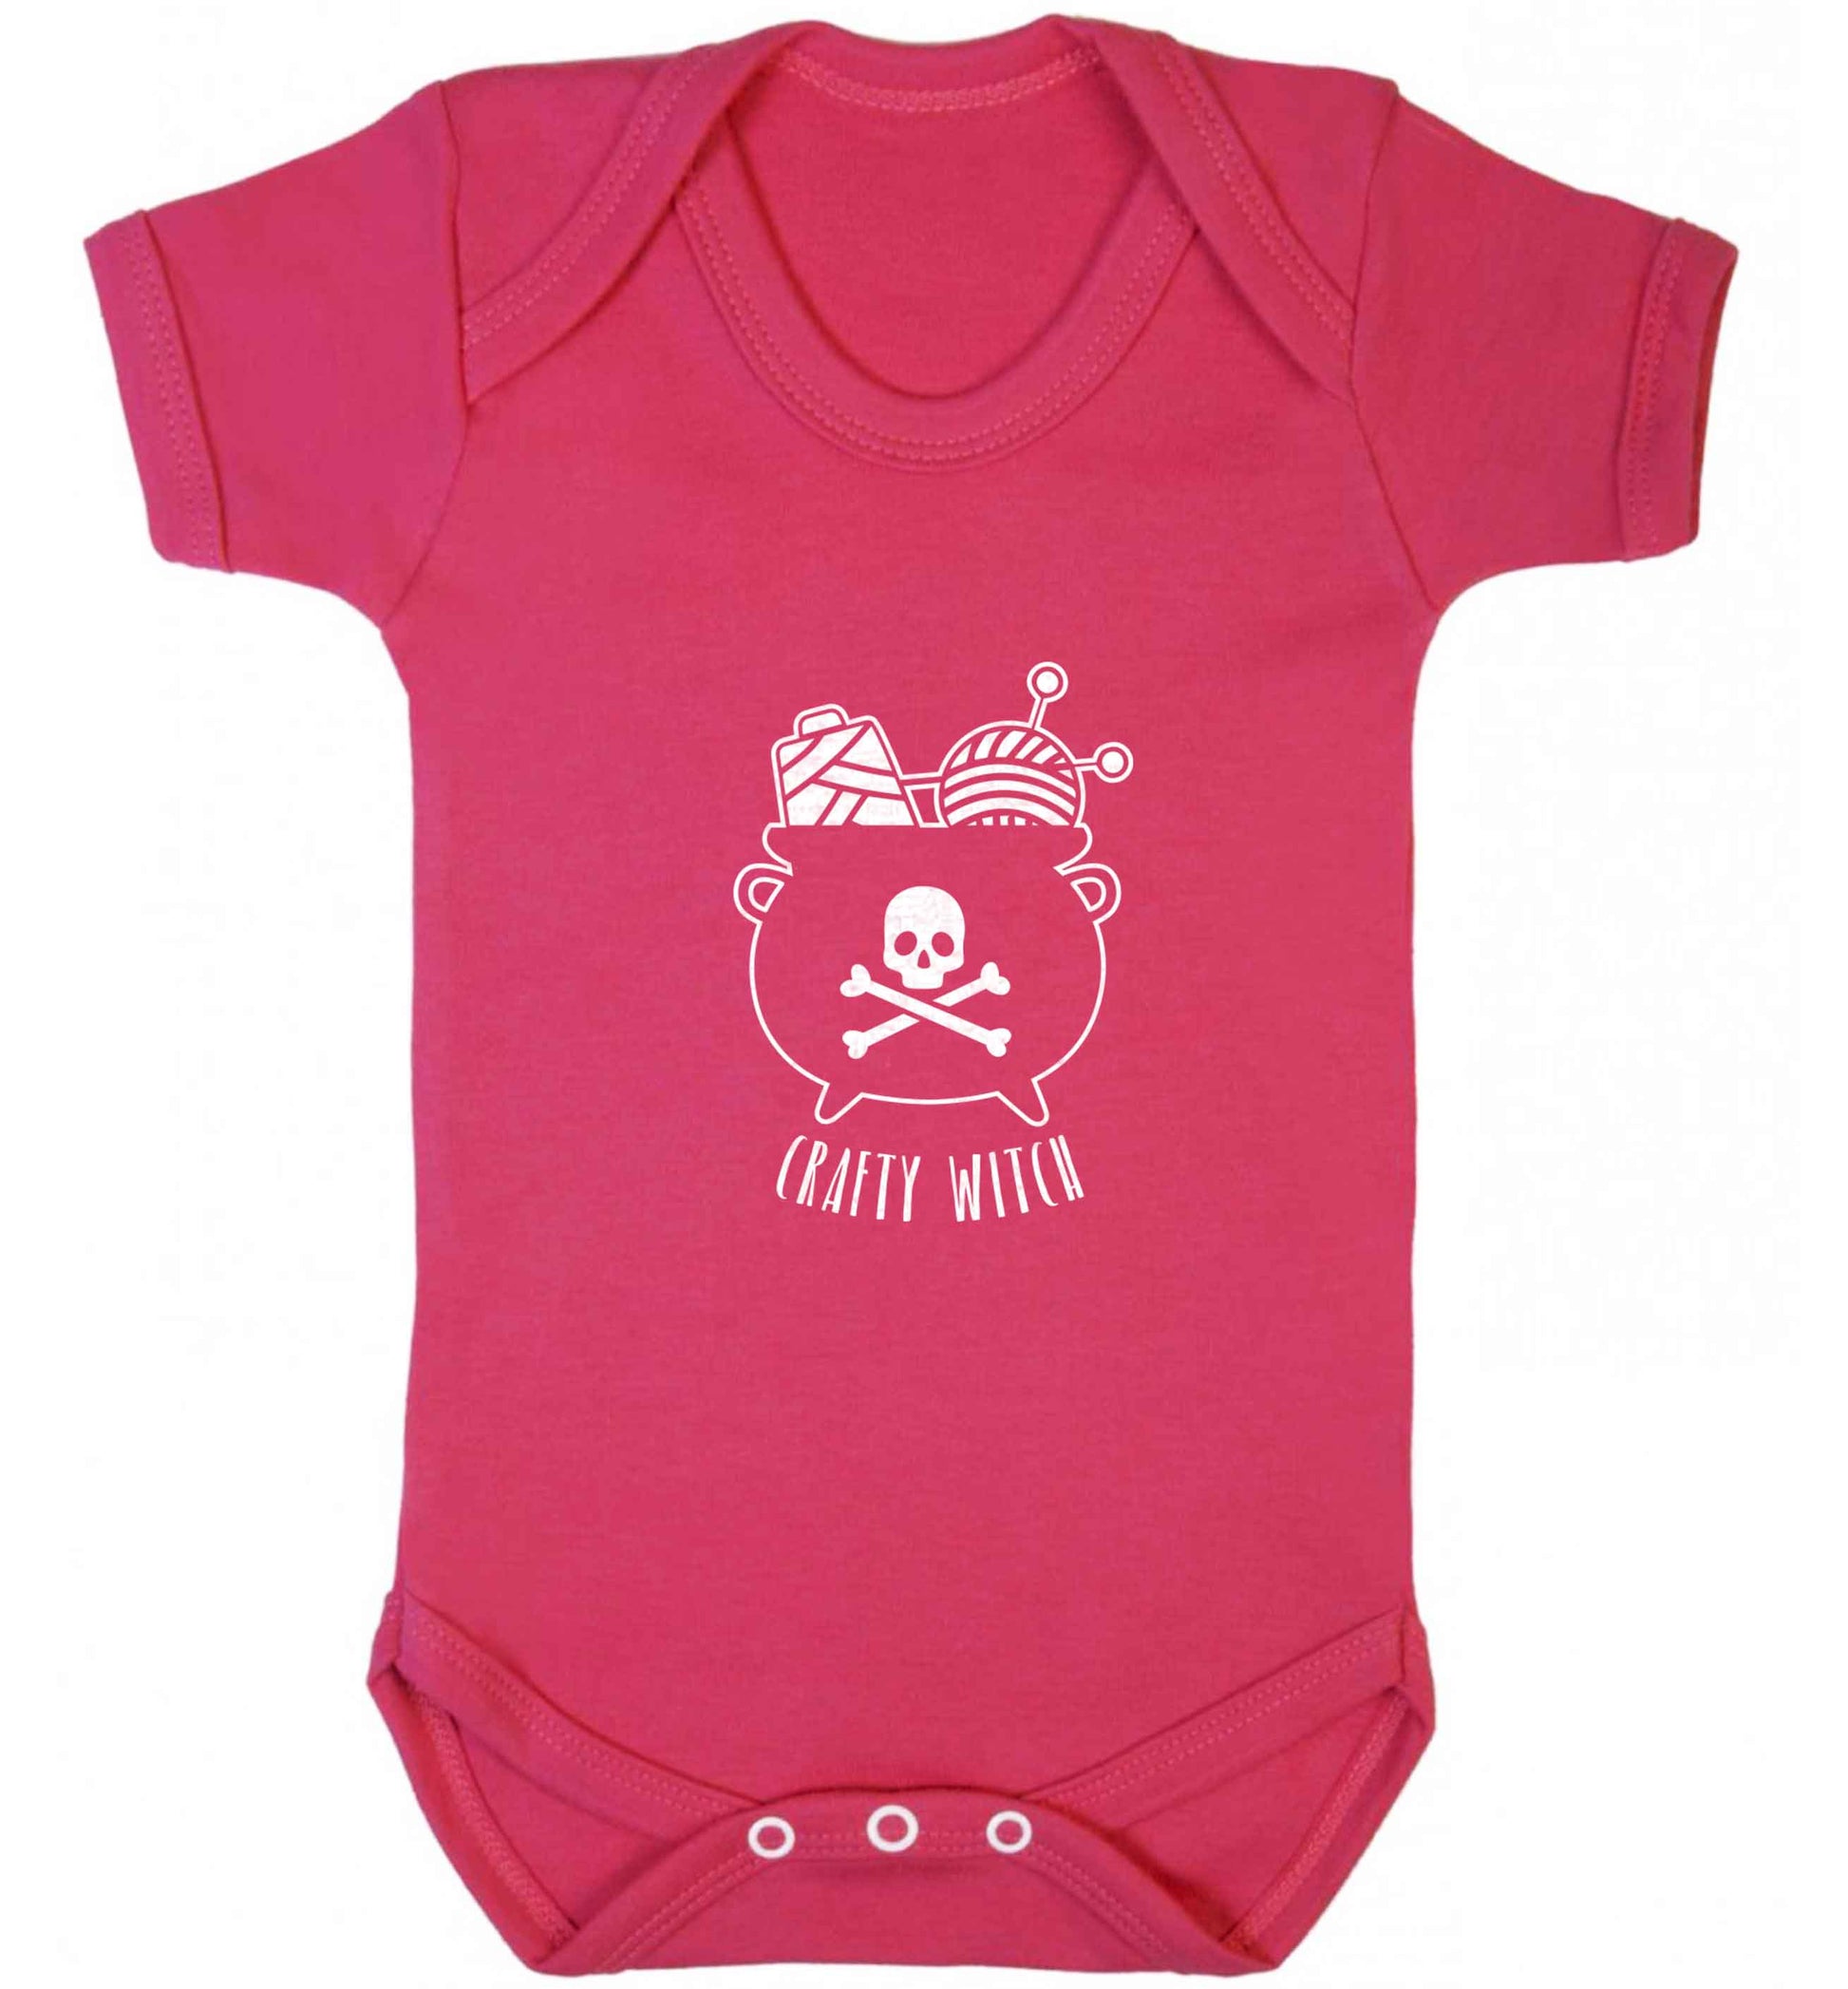 Crafty witch baby vest dark pink 18-24 months